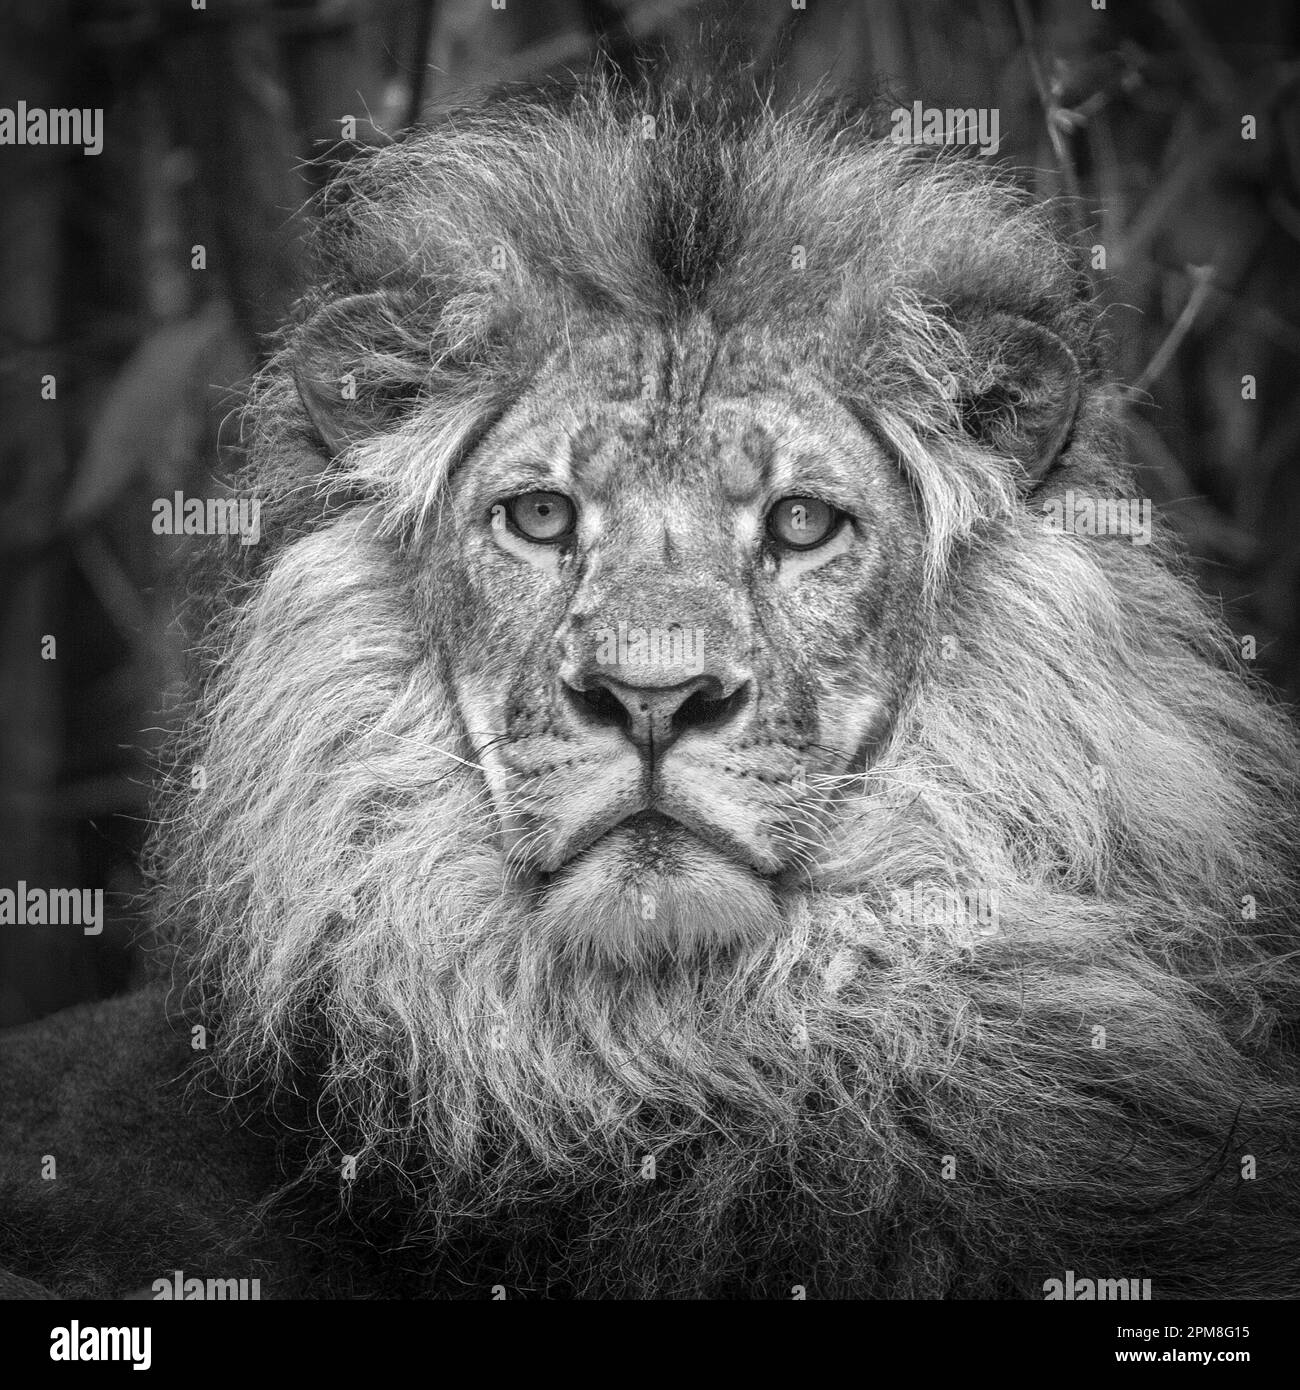 Afrique du Sud, Johannesburg, Lion, homme, en captivité (Panthera Leo). Image noir et blanc. Banque D'Images